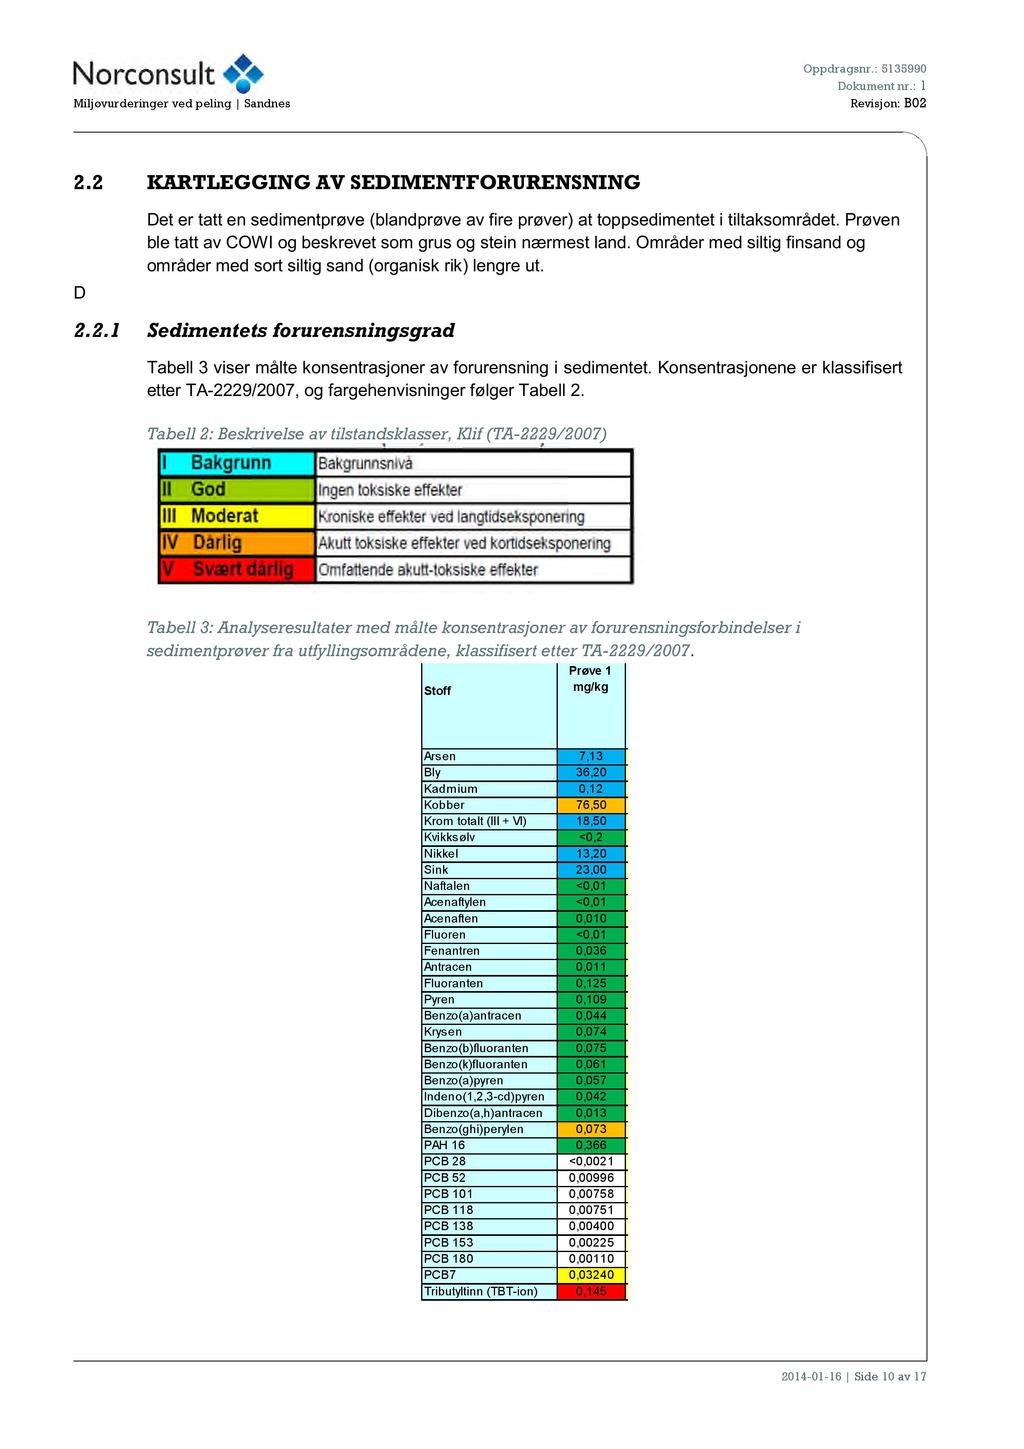 Oppdragsnr.: 5135990 Miljøvurderinger vedpeling Sandnes Revisjon: B02 2.